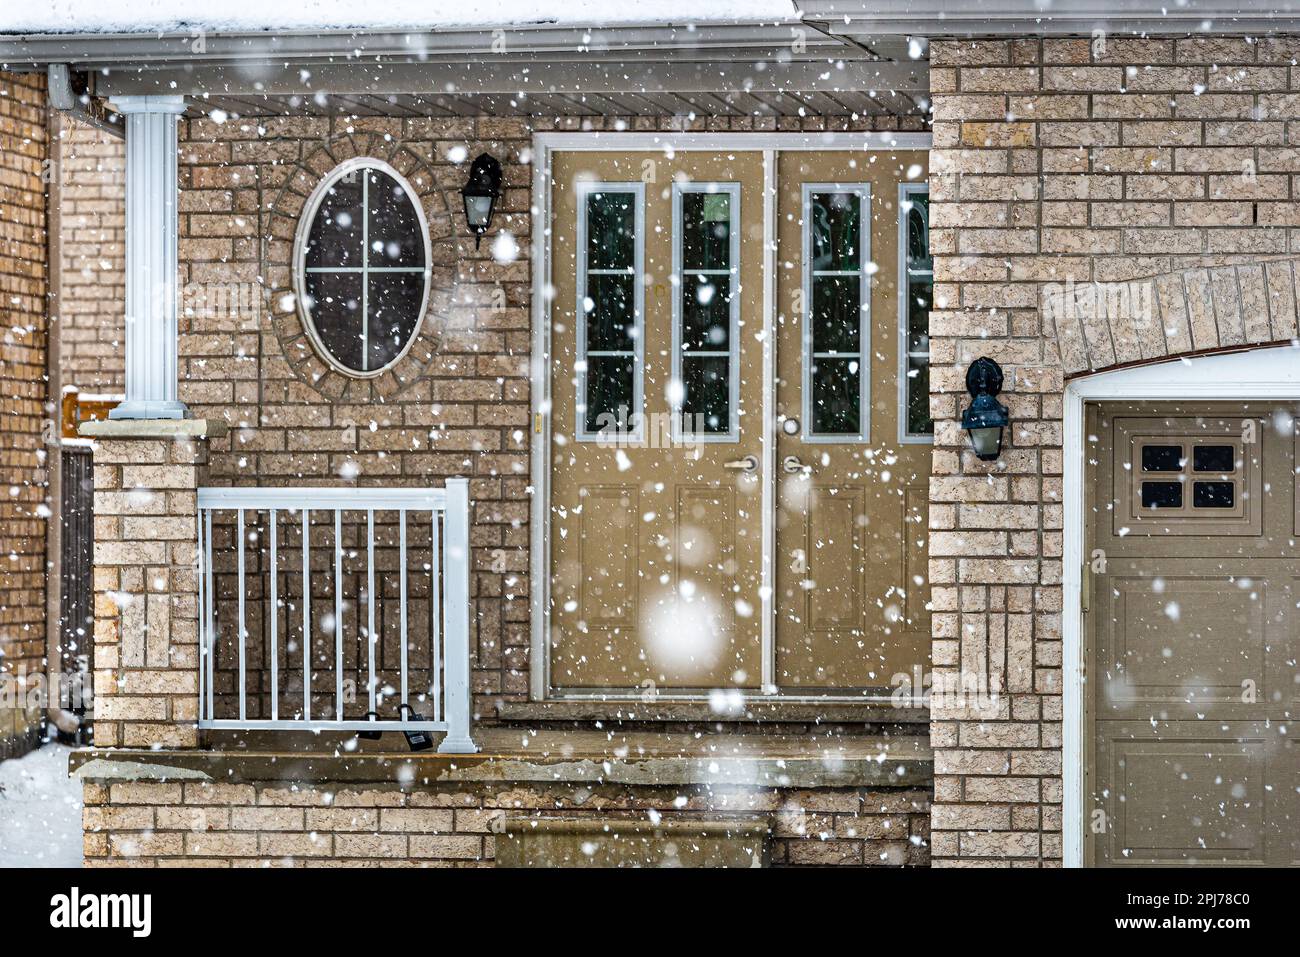 Winter, es schneit. Eine wunderbare Atmosphäre in der kanadischen Architektur von Einfamilienhäusern. Stockfoto